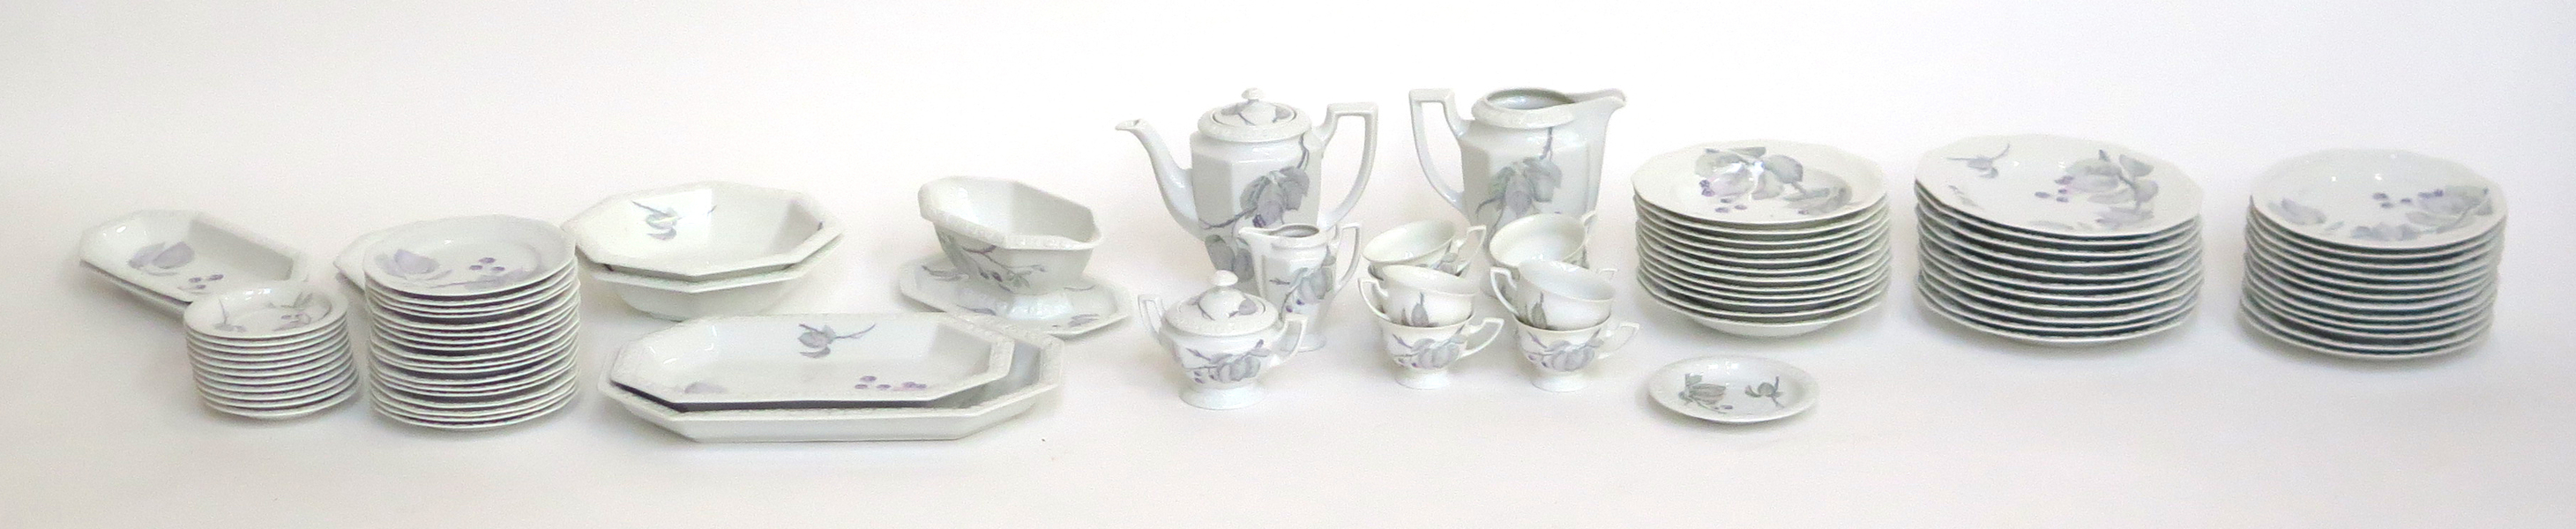 Mat- och kaffeservis, porslin, Maria Björnbär, cirka 70 delar, design 1916, _22843a_lg.jpeg